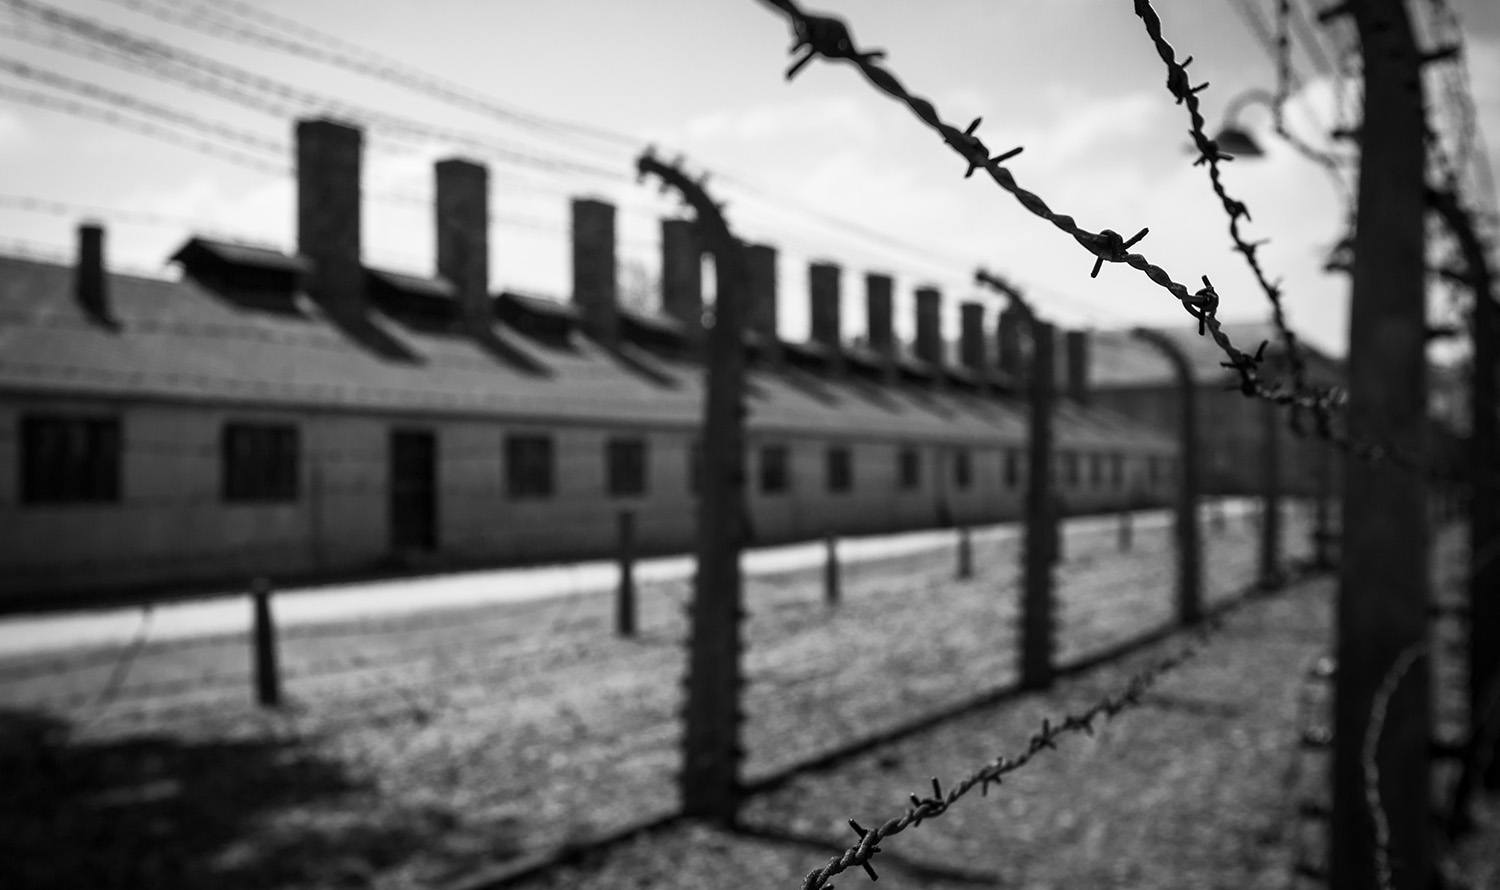 Schwarz-weiß Fotografie eines Konzentrationslagers.